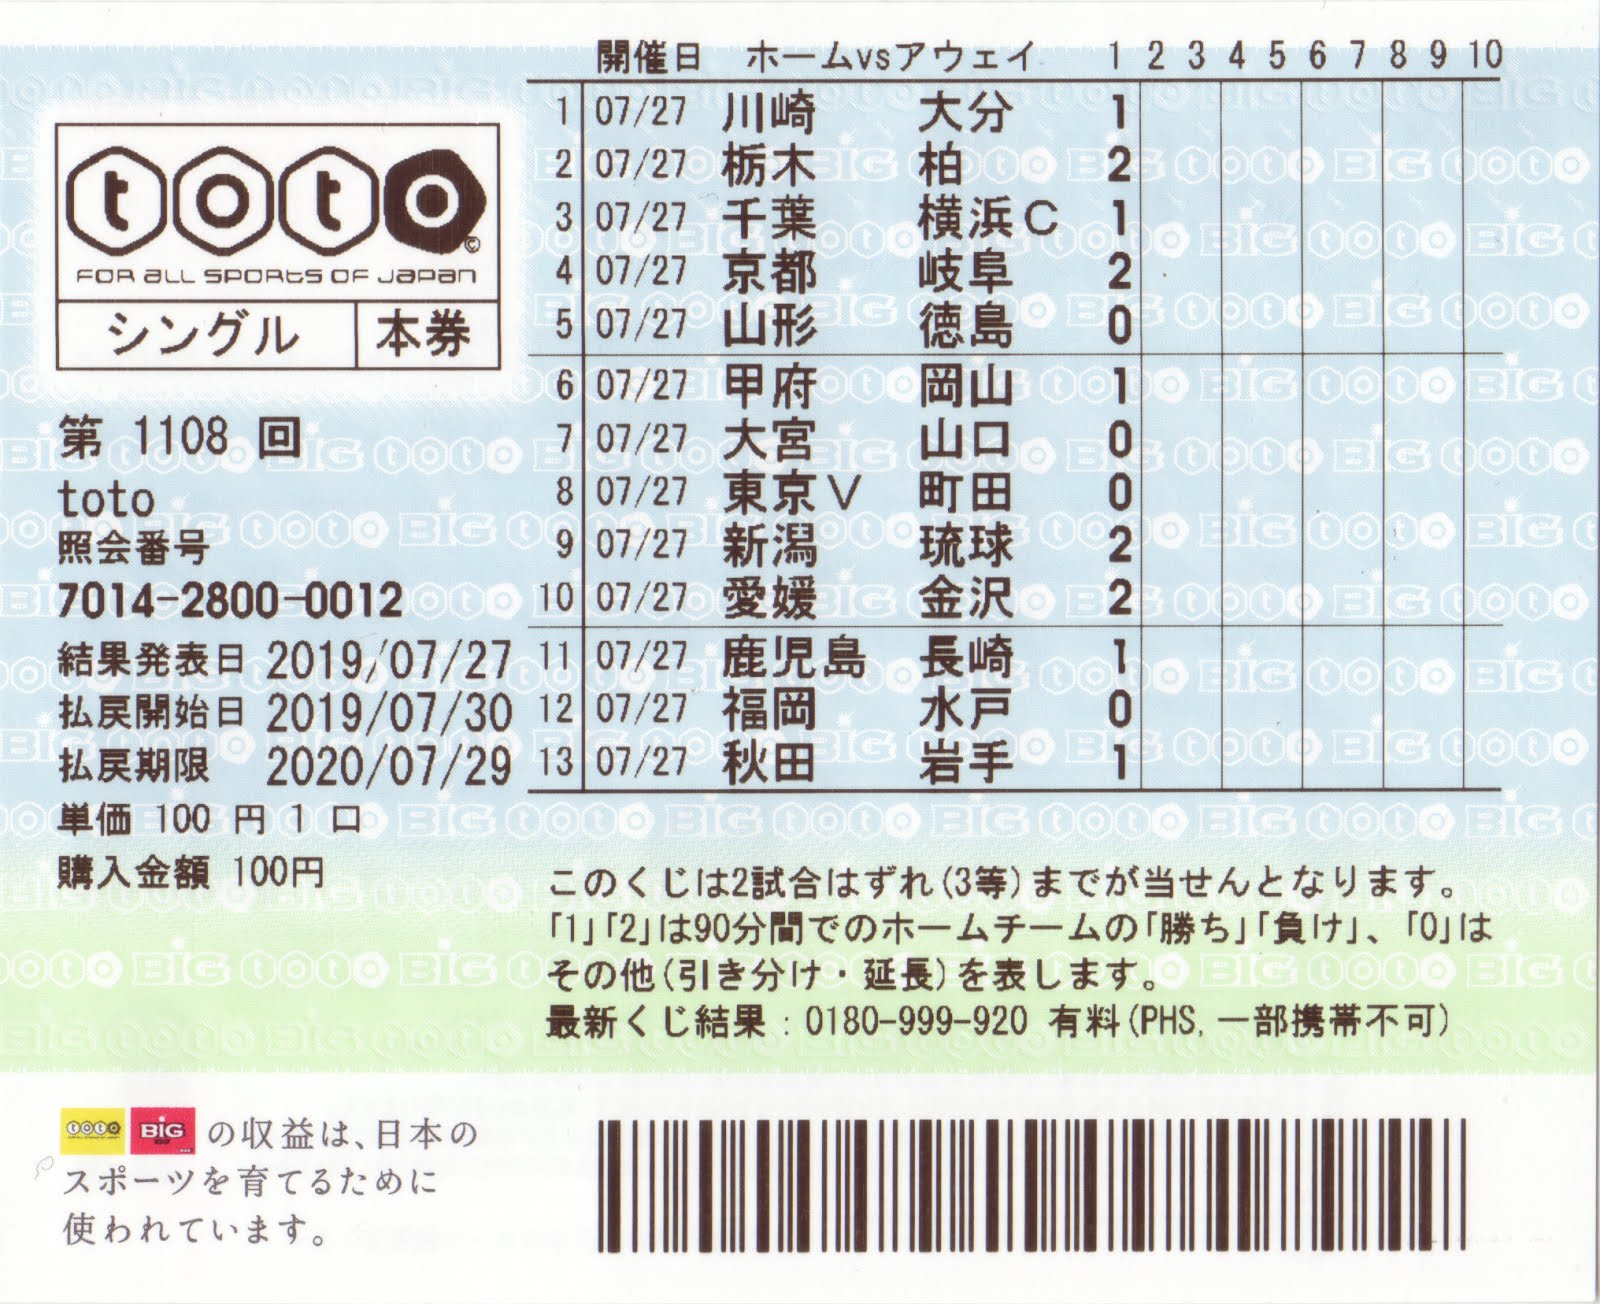 Yoshi223のブログ ナンバーズ ビンゴ5 ロト Toto Bigの宝くじ券 申込カード